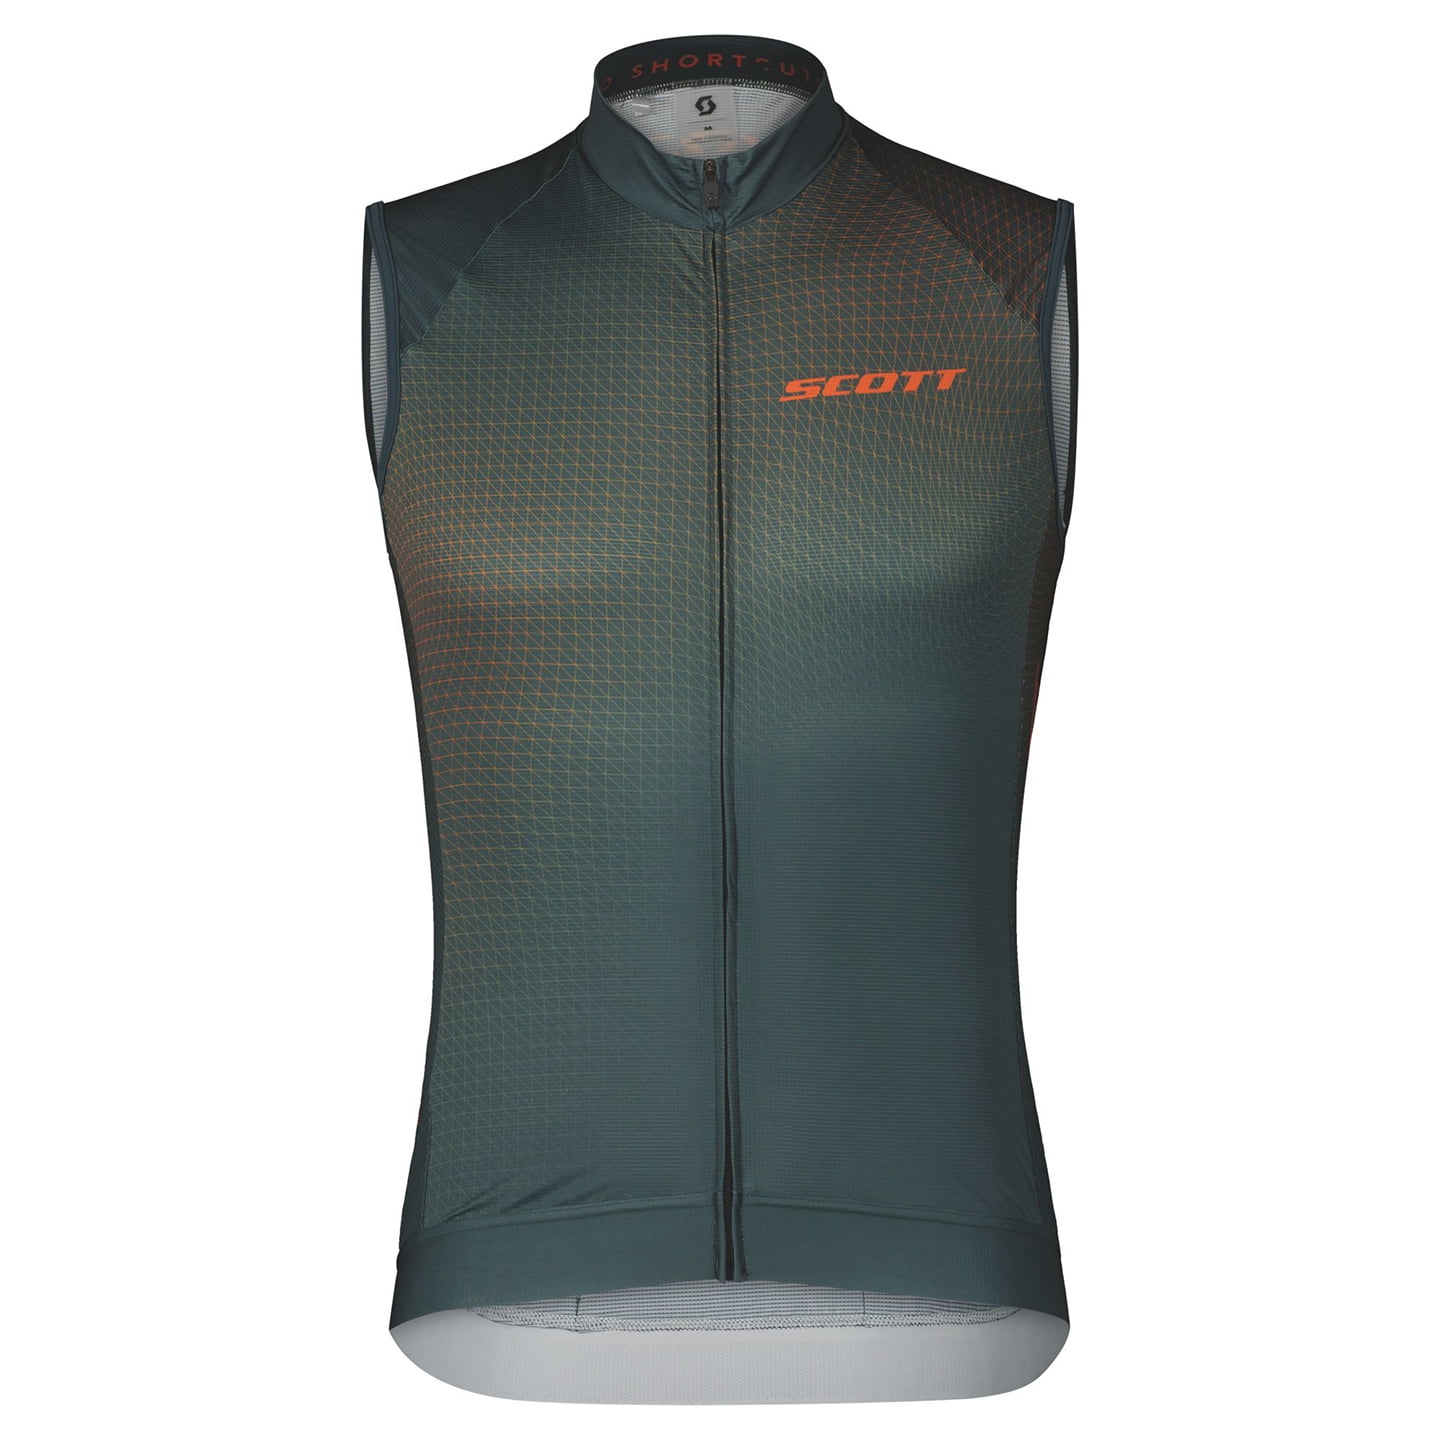 SCOTT RC Pro Sleeveless Cycling Jersey Sleeveless Jersey, for men, size S, Cycling jersey, Cycling clothing